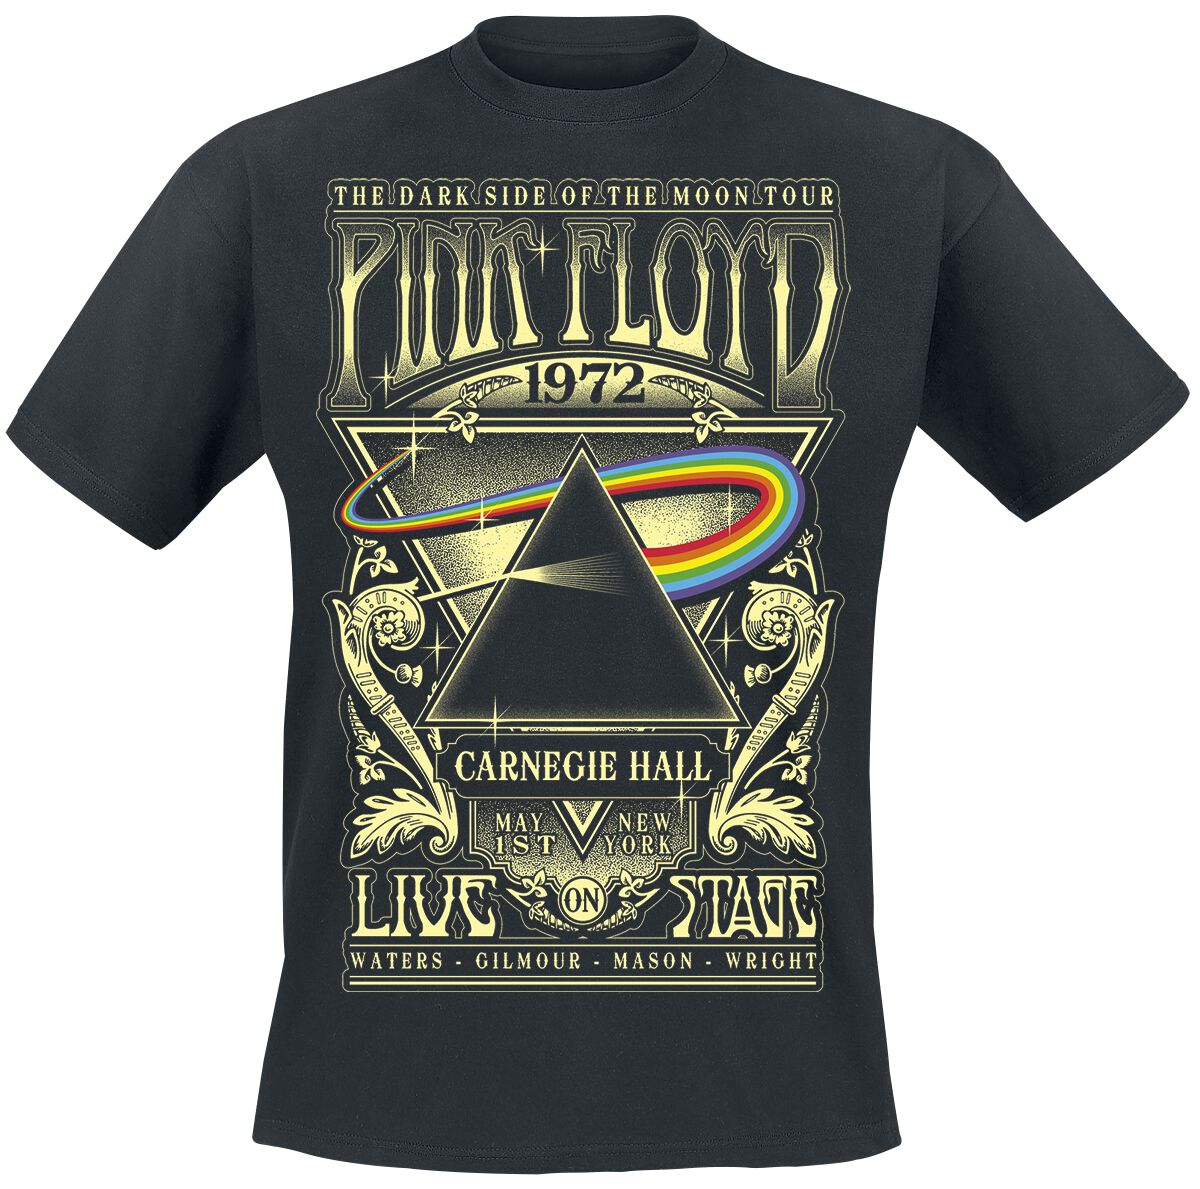 Pink Floyd T-Shirt - The Dark Side Of The Moon - Live On Stage 1972 - S bis 5XL - für Männer - Größe 4XL - schwarz  - Lizenziertes Merchandise!